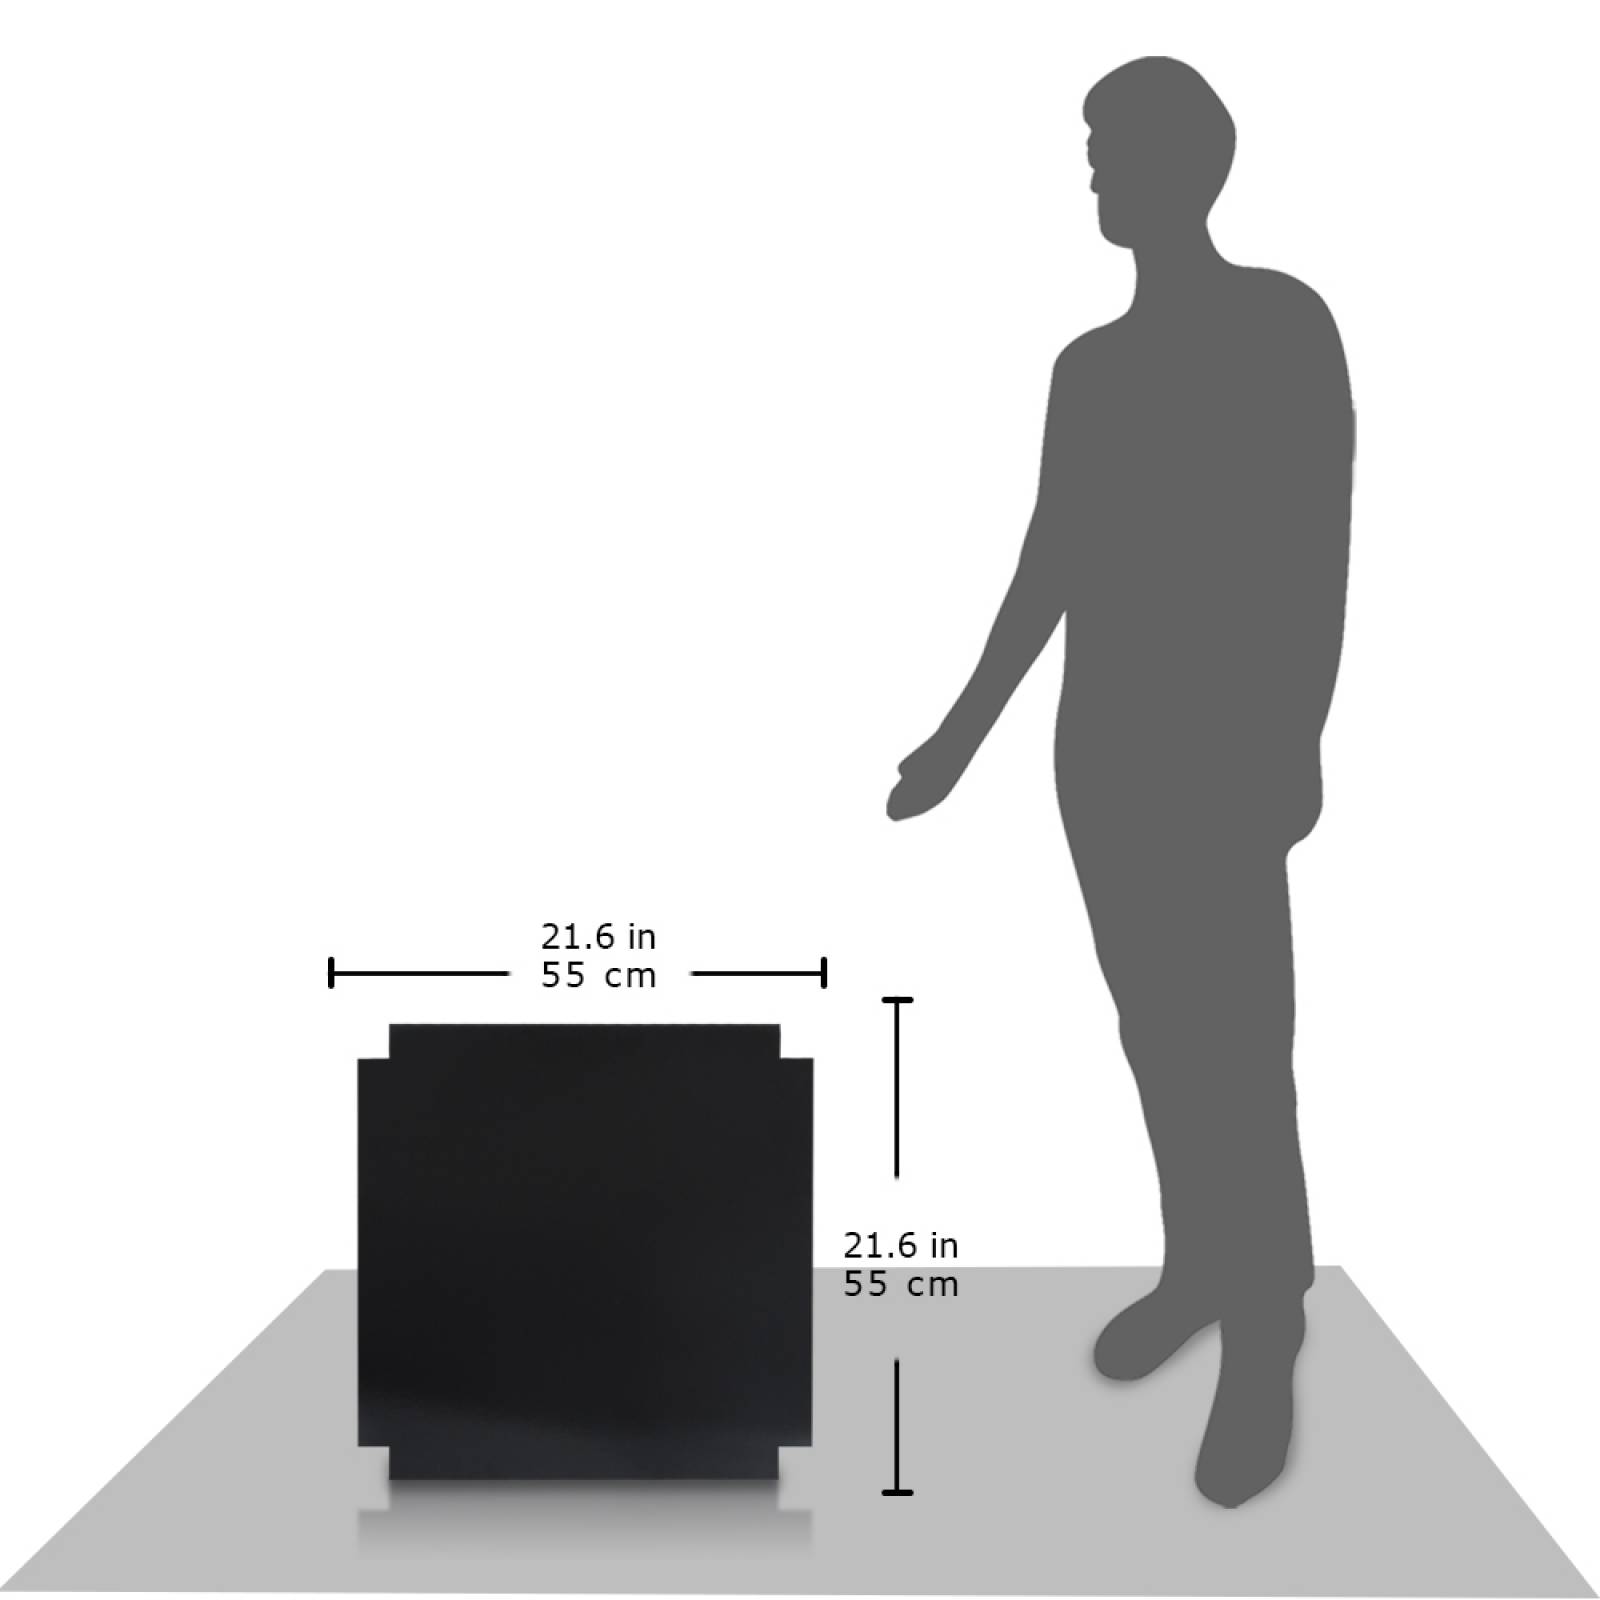 Aislante Cerámico Protector Térmico para Pared de 55 x 55 cm Negro, Paquete 3 Piezas, Mod: 1PTPP3Ne